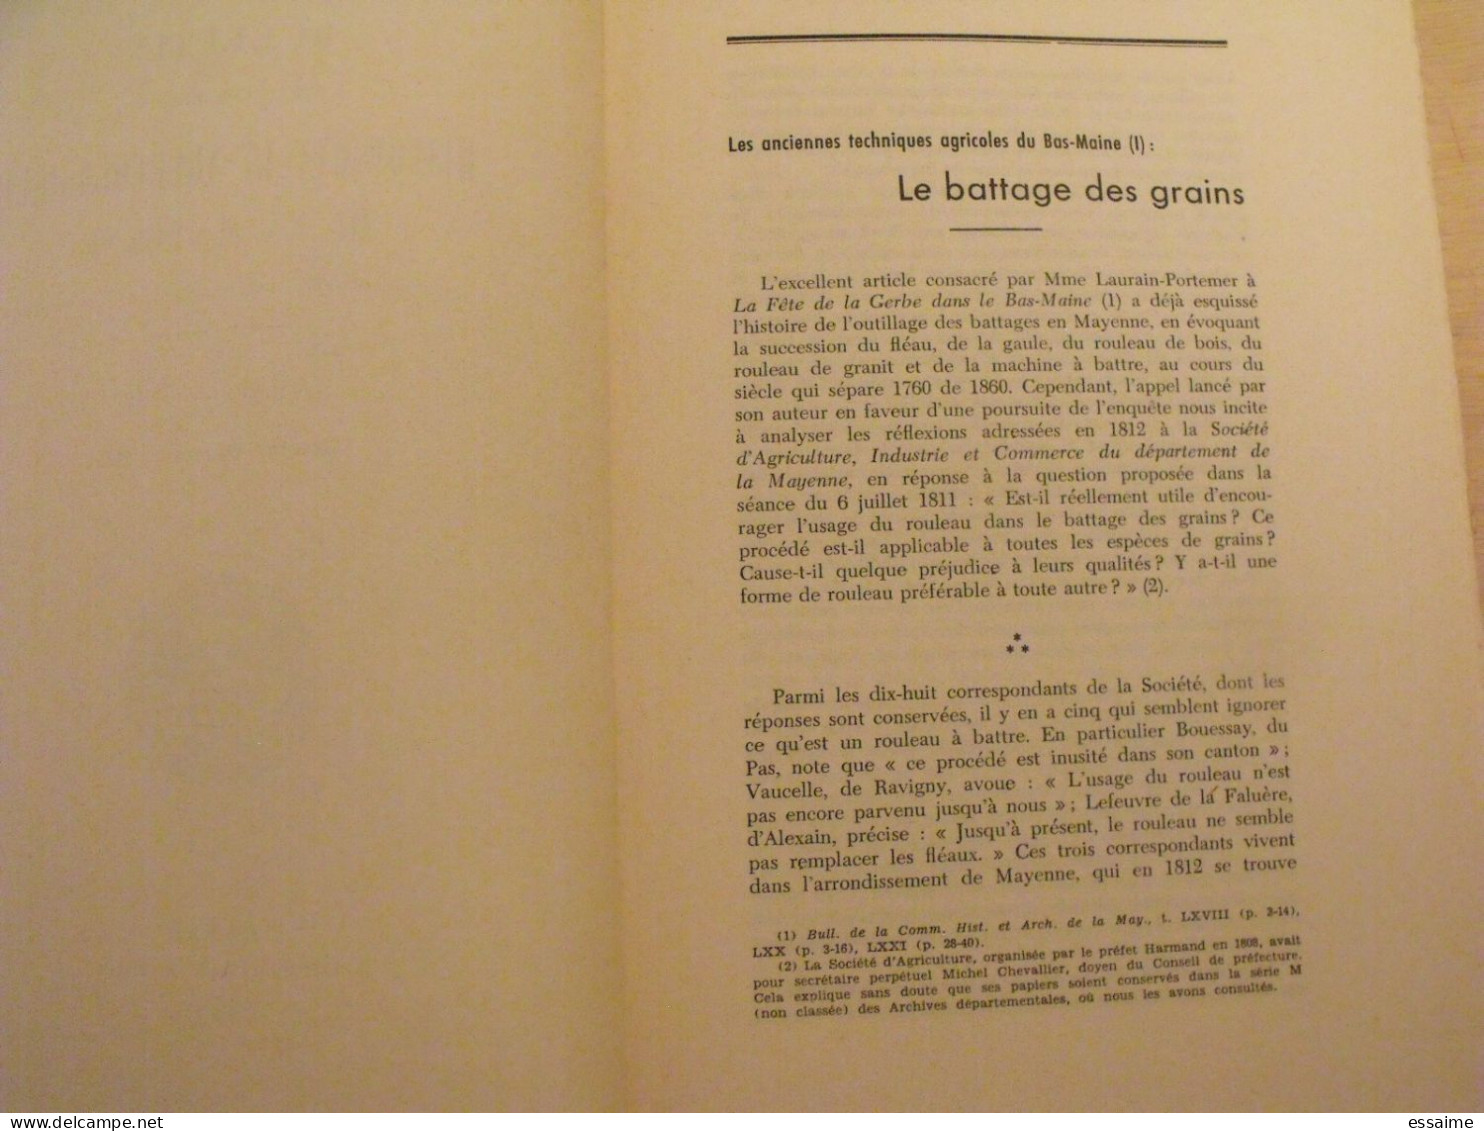 Bulletin Historique Et Archéologique De La Mayenne. 1965, N° 8 (237) . Laval Chateau-Gontier. Goupil. - Pays De Loire